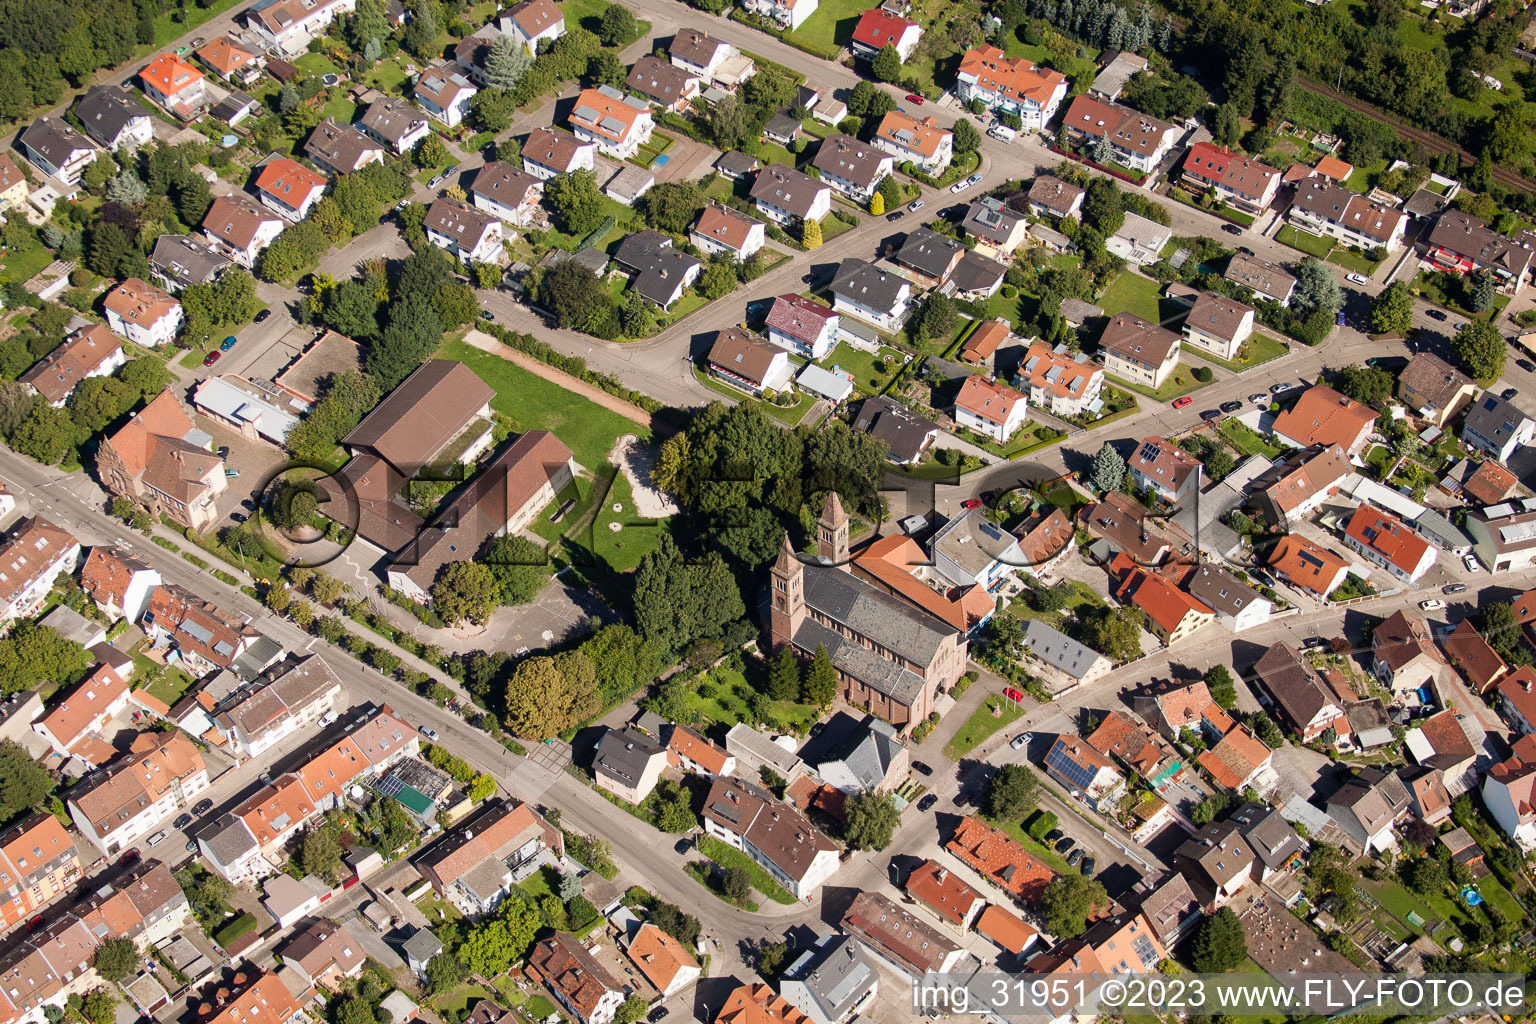 Luftbild von St. Cyriakus im Ortsteil Beiertheim-Bulach in Karlsruhe im Bundesland Baden-Württemberg, Deutschland